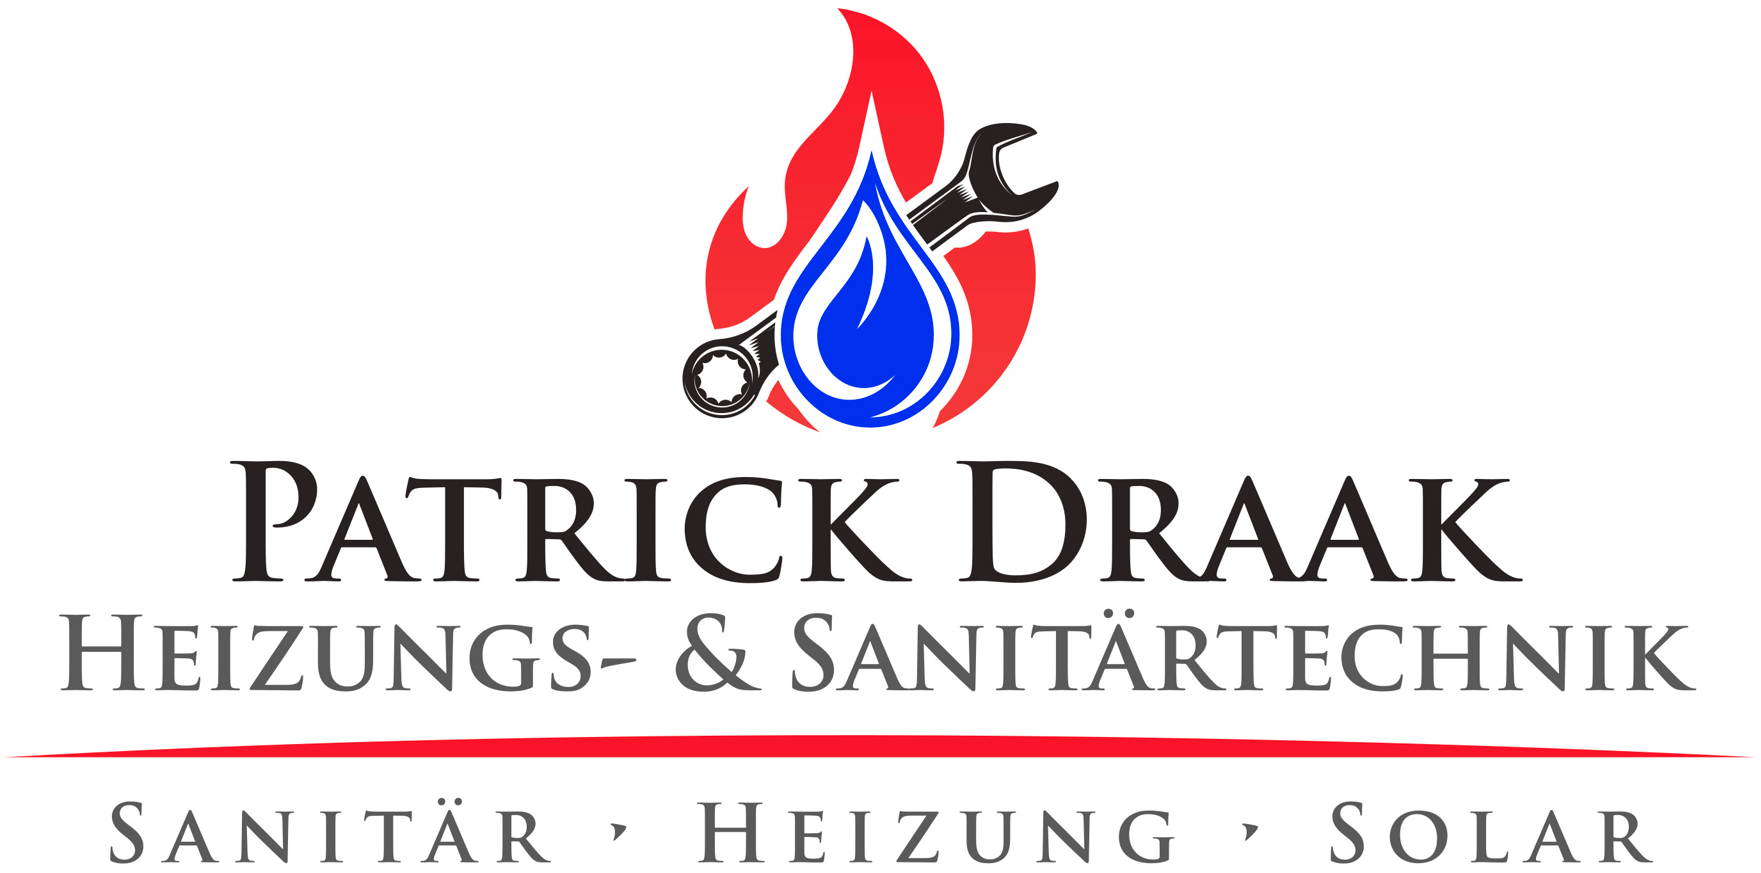 Patrick Draak Heizungs- & Sanitärtechnik Logo